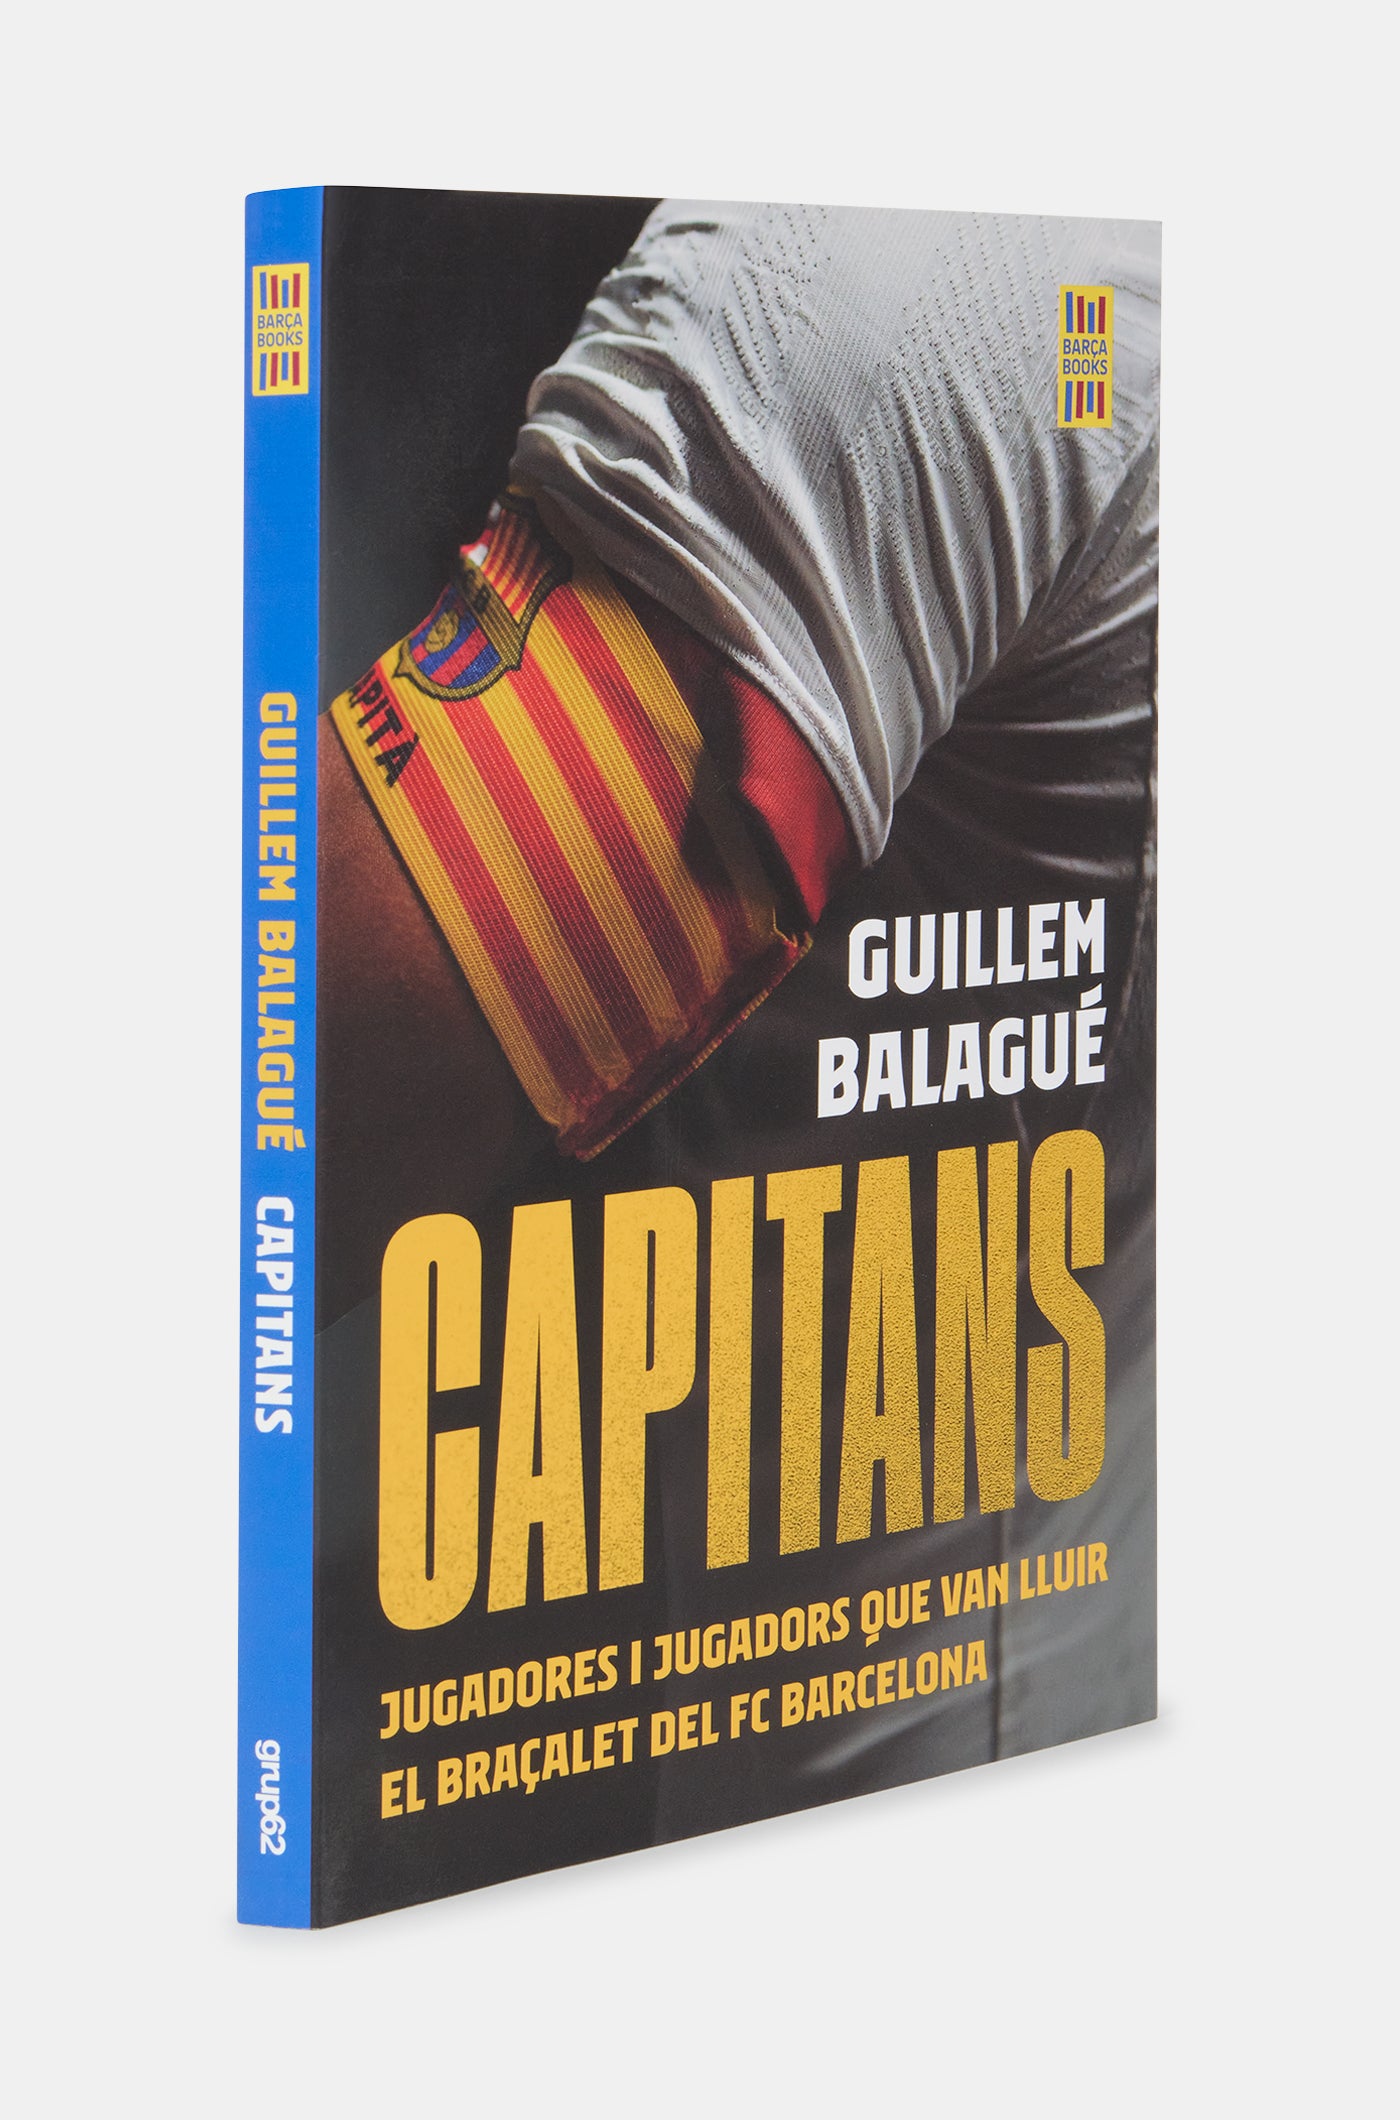 Book "Capitans"